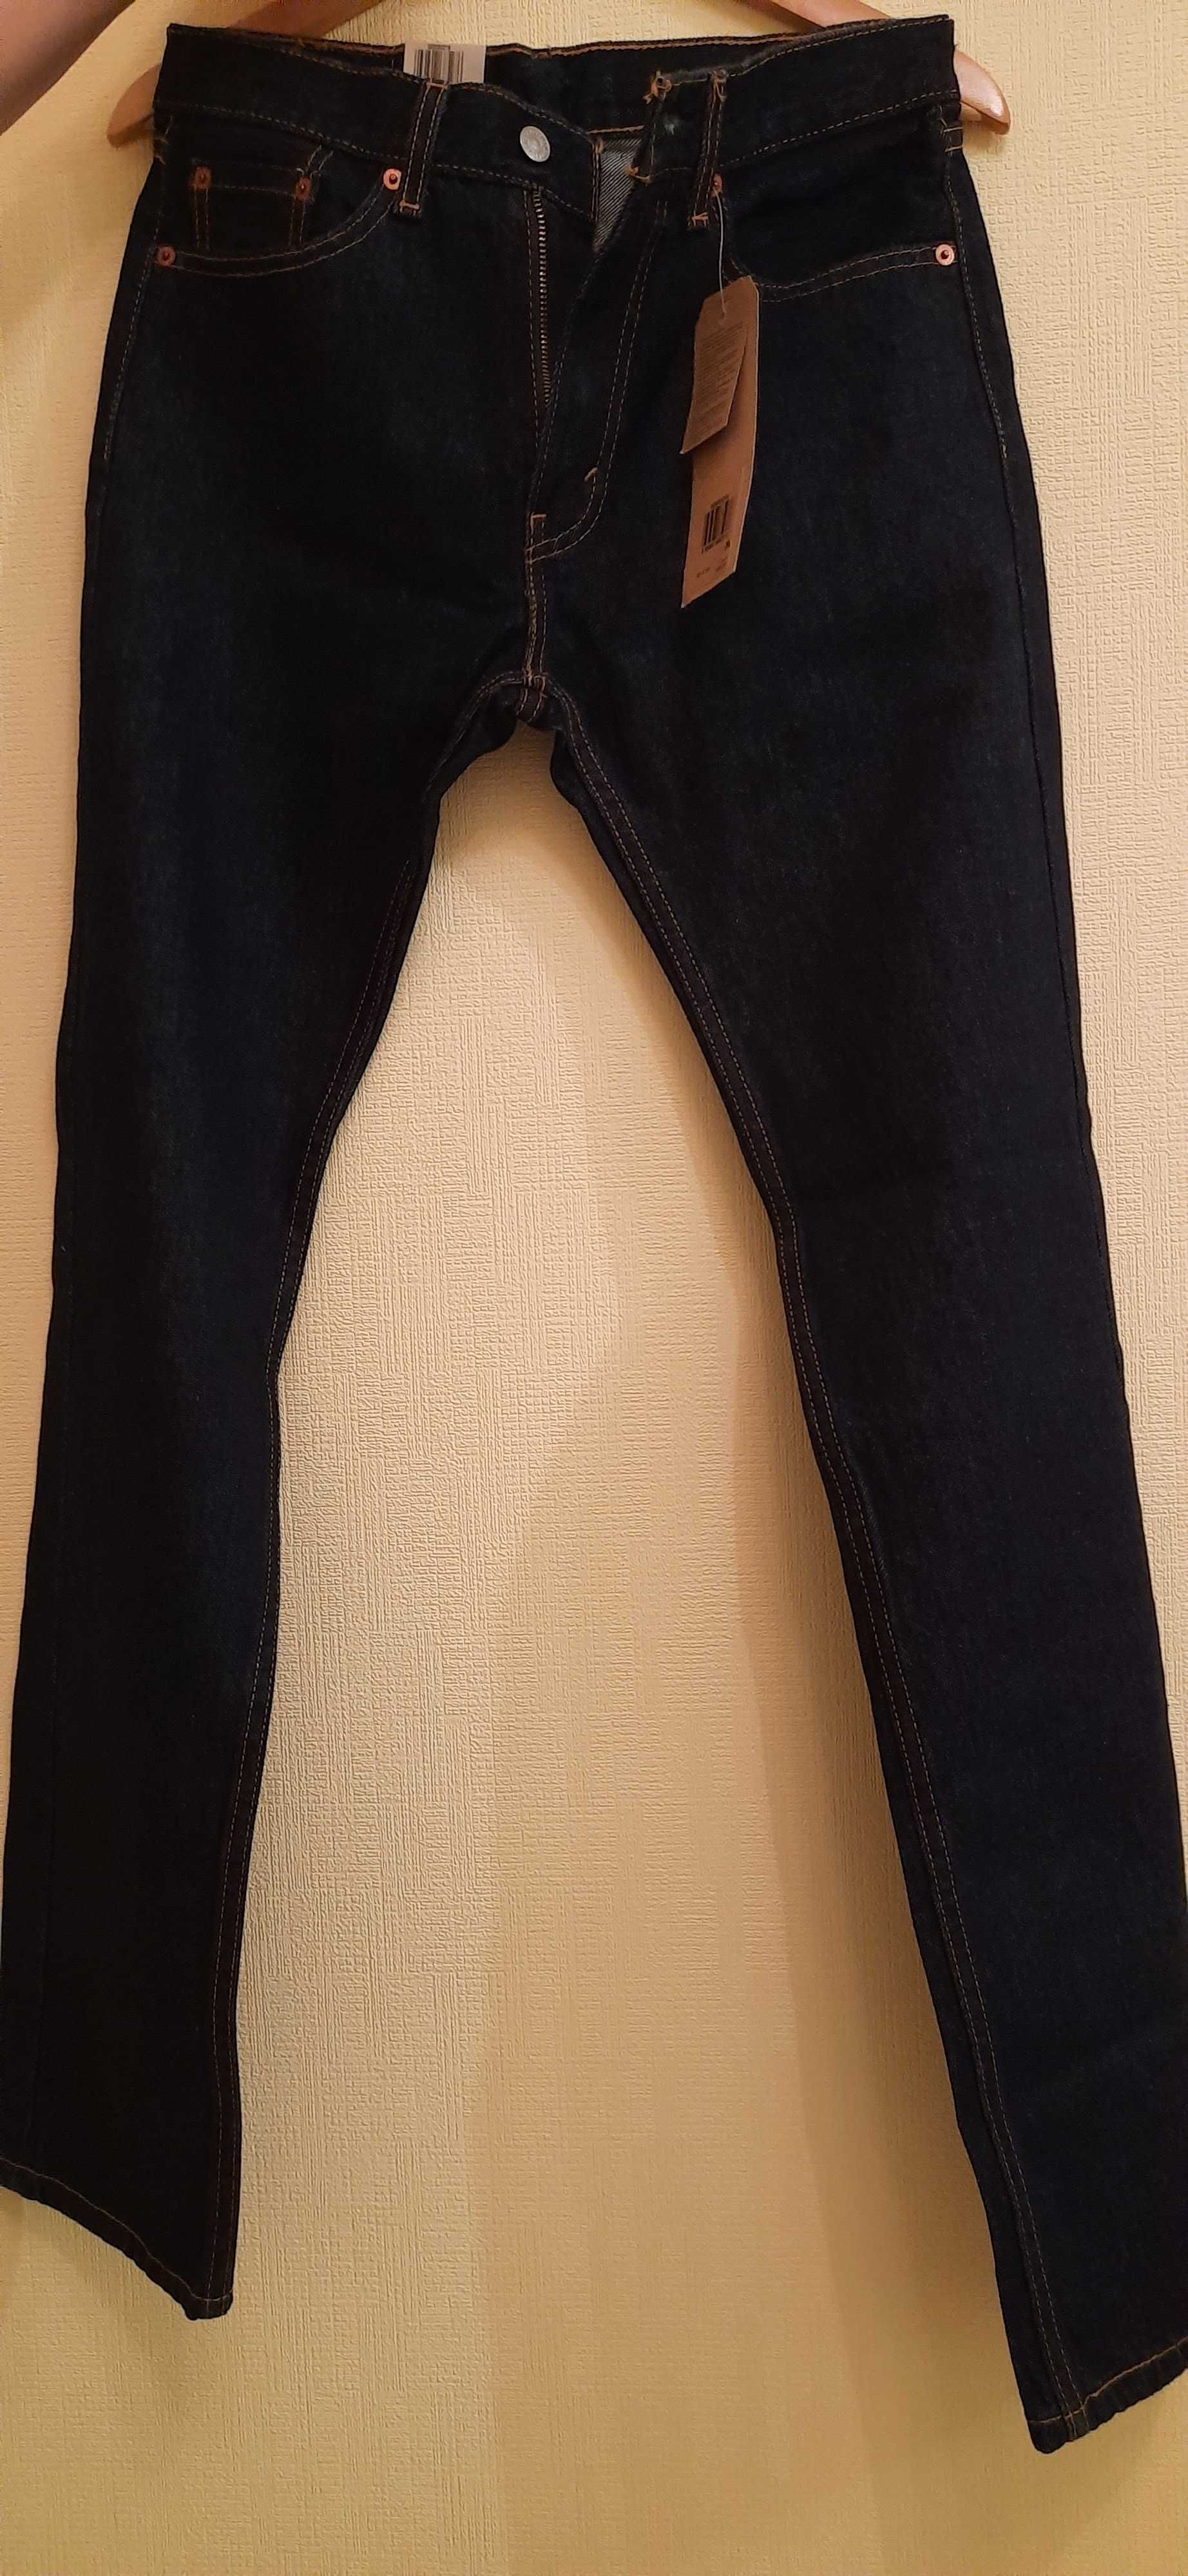 Новые джинсы Levi's мужские, w30 l34, на высокий рост.